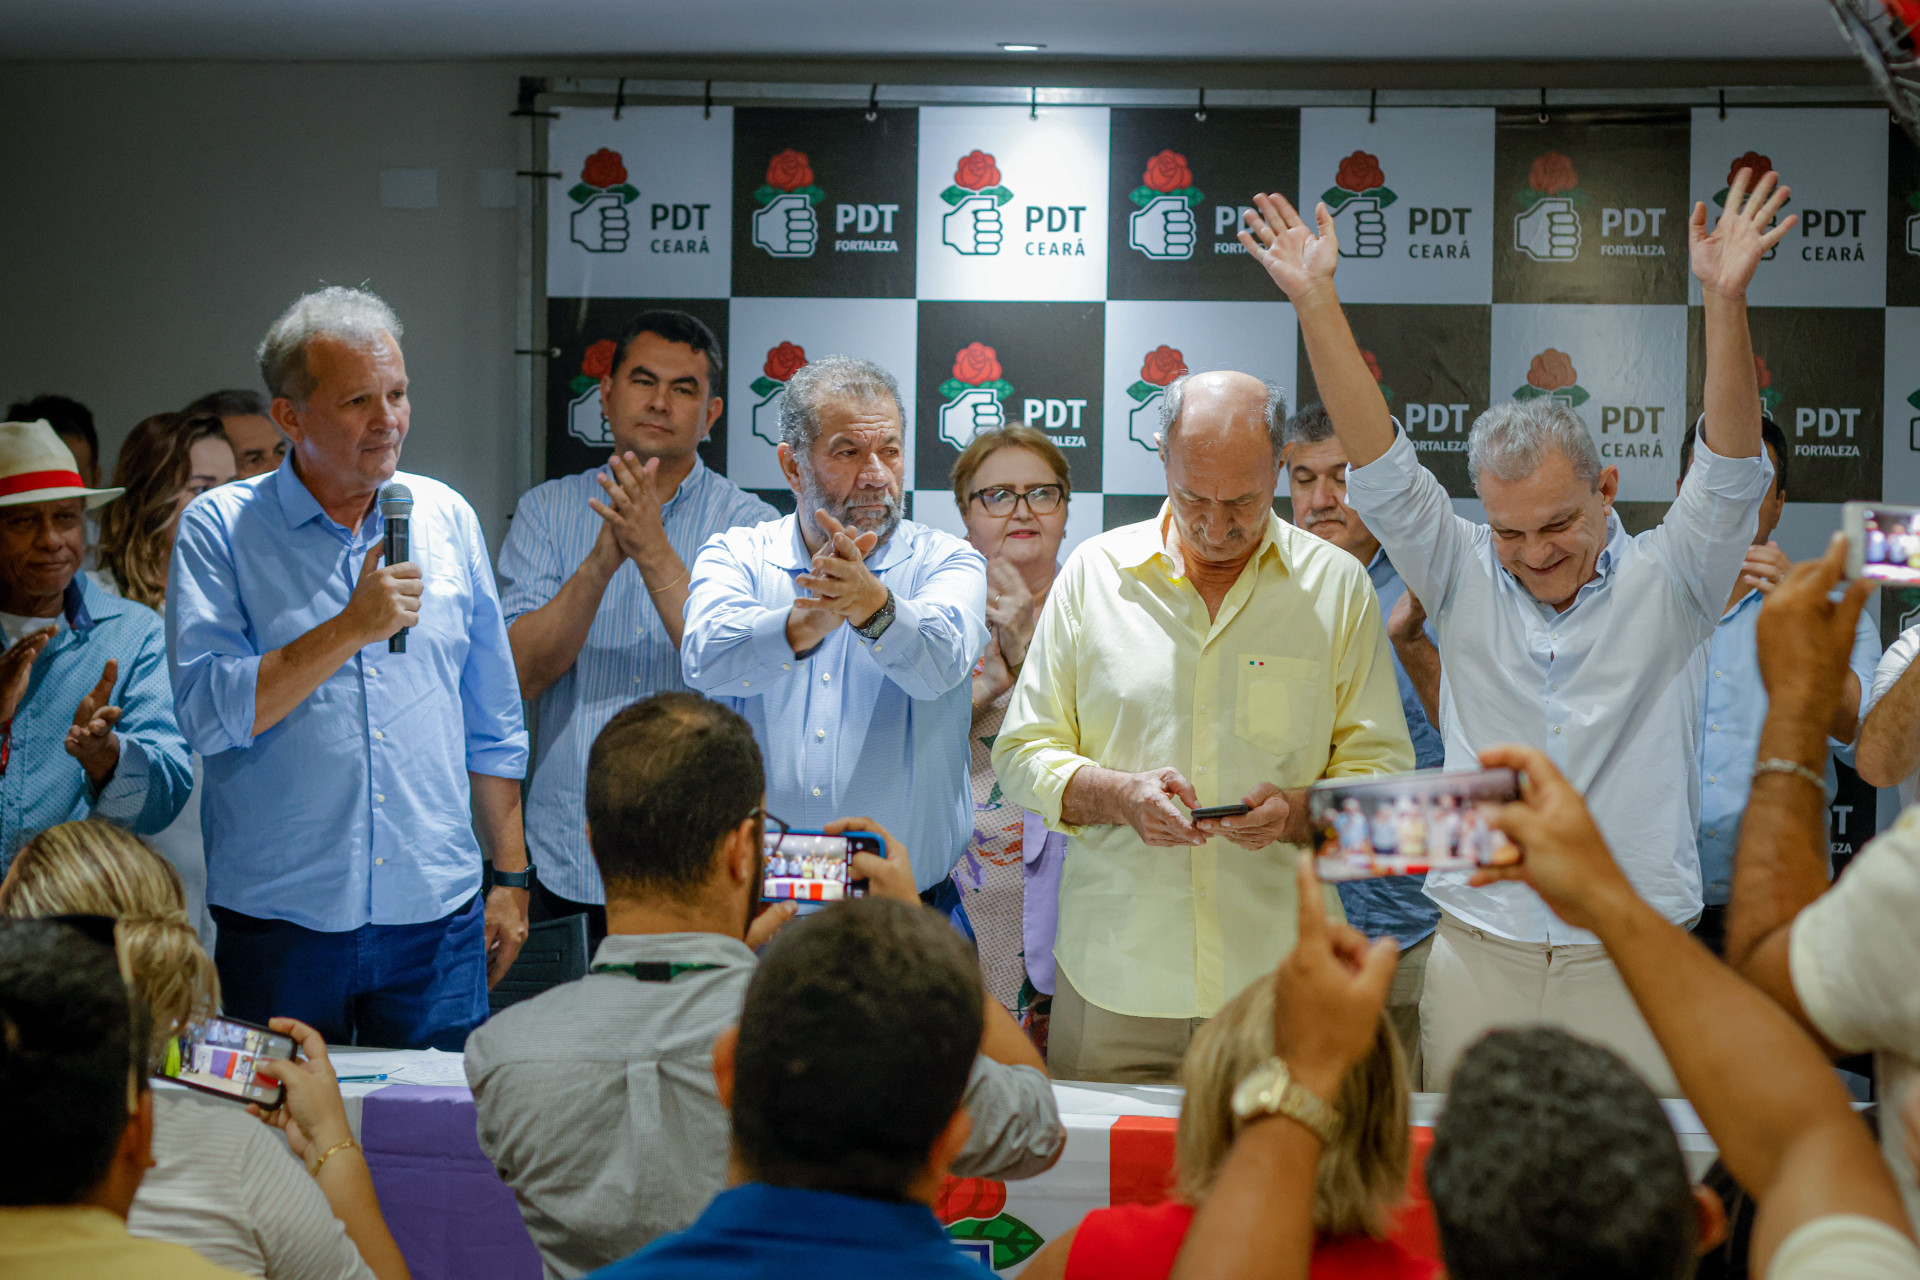 ￼ André Figueiredo, Carlos Lupi, Flávio Torres e José Sarto em ato no PDT Ceará (Foto: AURÉLIO ALVES)